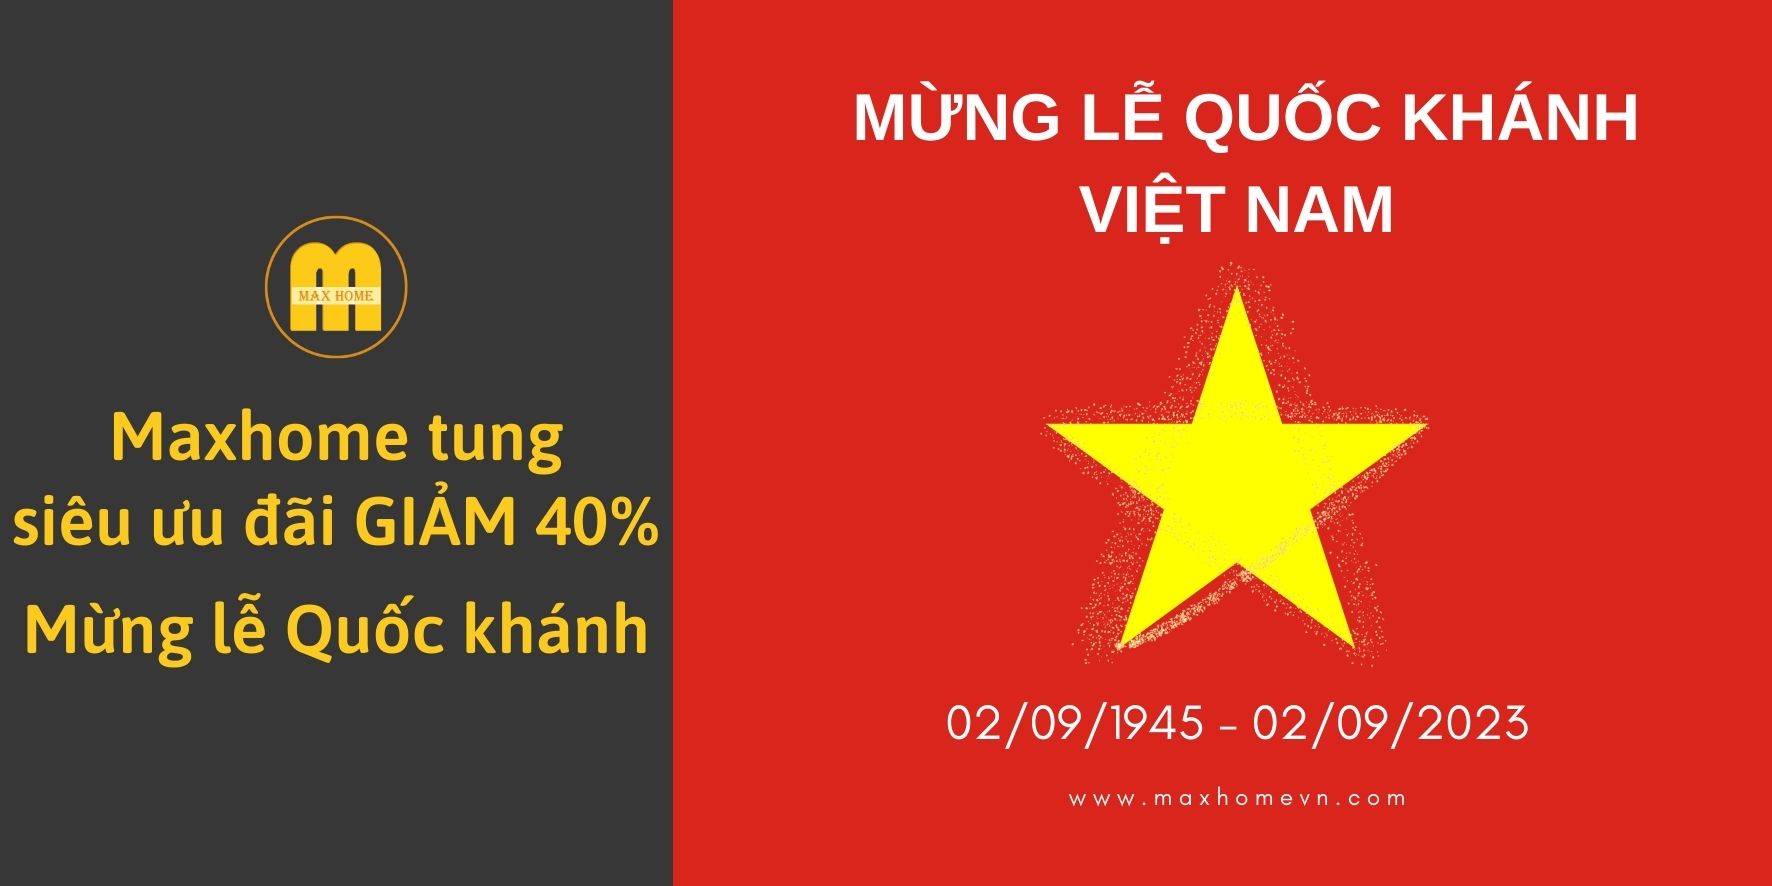 mung-quoc-khanh-2-9-cung-maxhome-sieu-uu-dai-giam-40